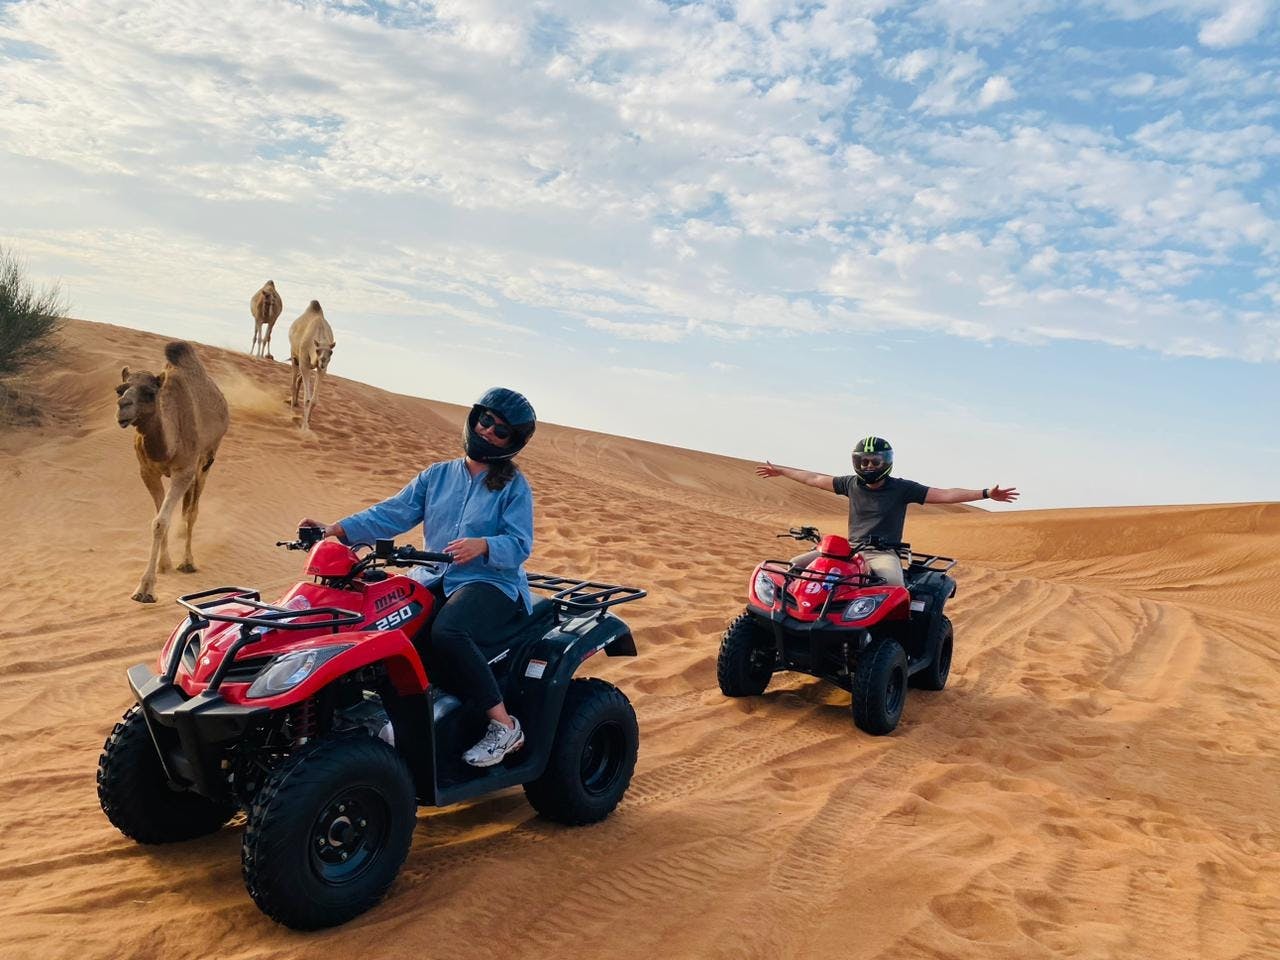 Podwójna przejażdżka quadem po pustyni w Dubaju z sandboardingiem, przejażdżką na wielbłądzie i grillem